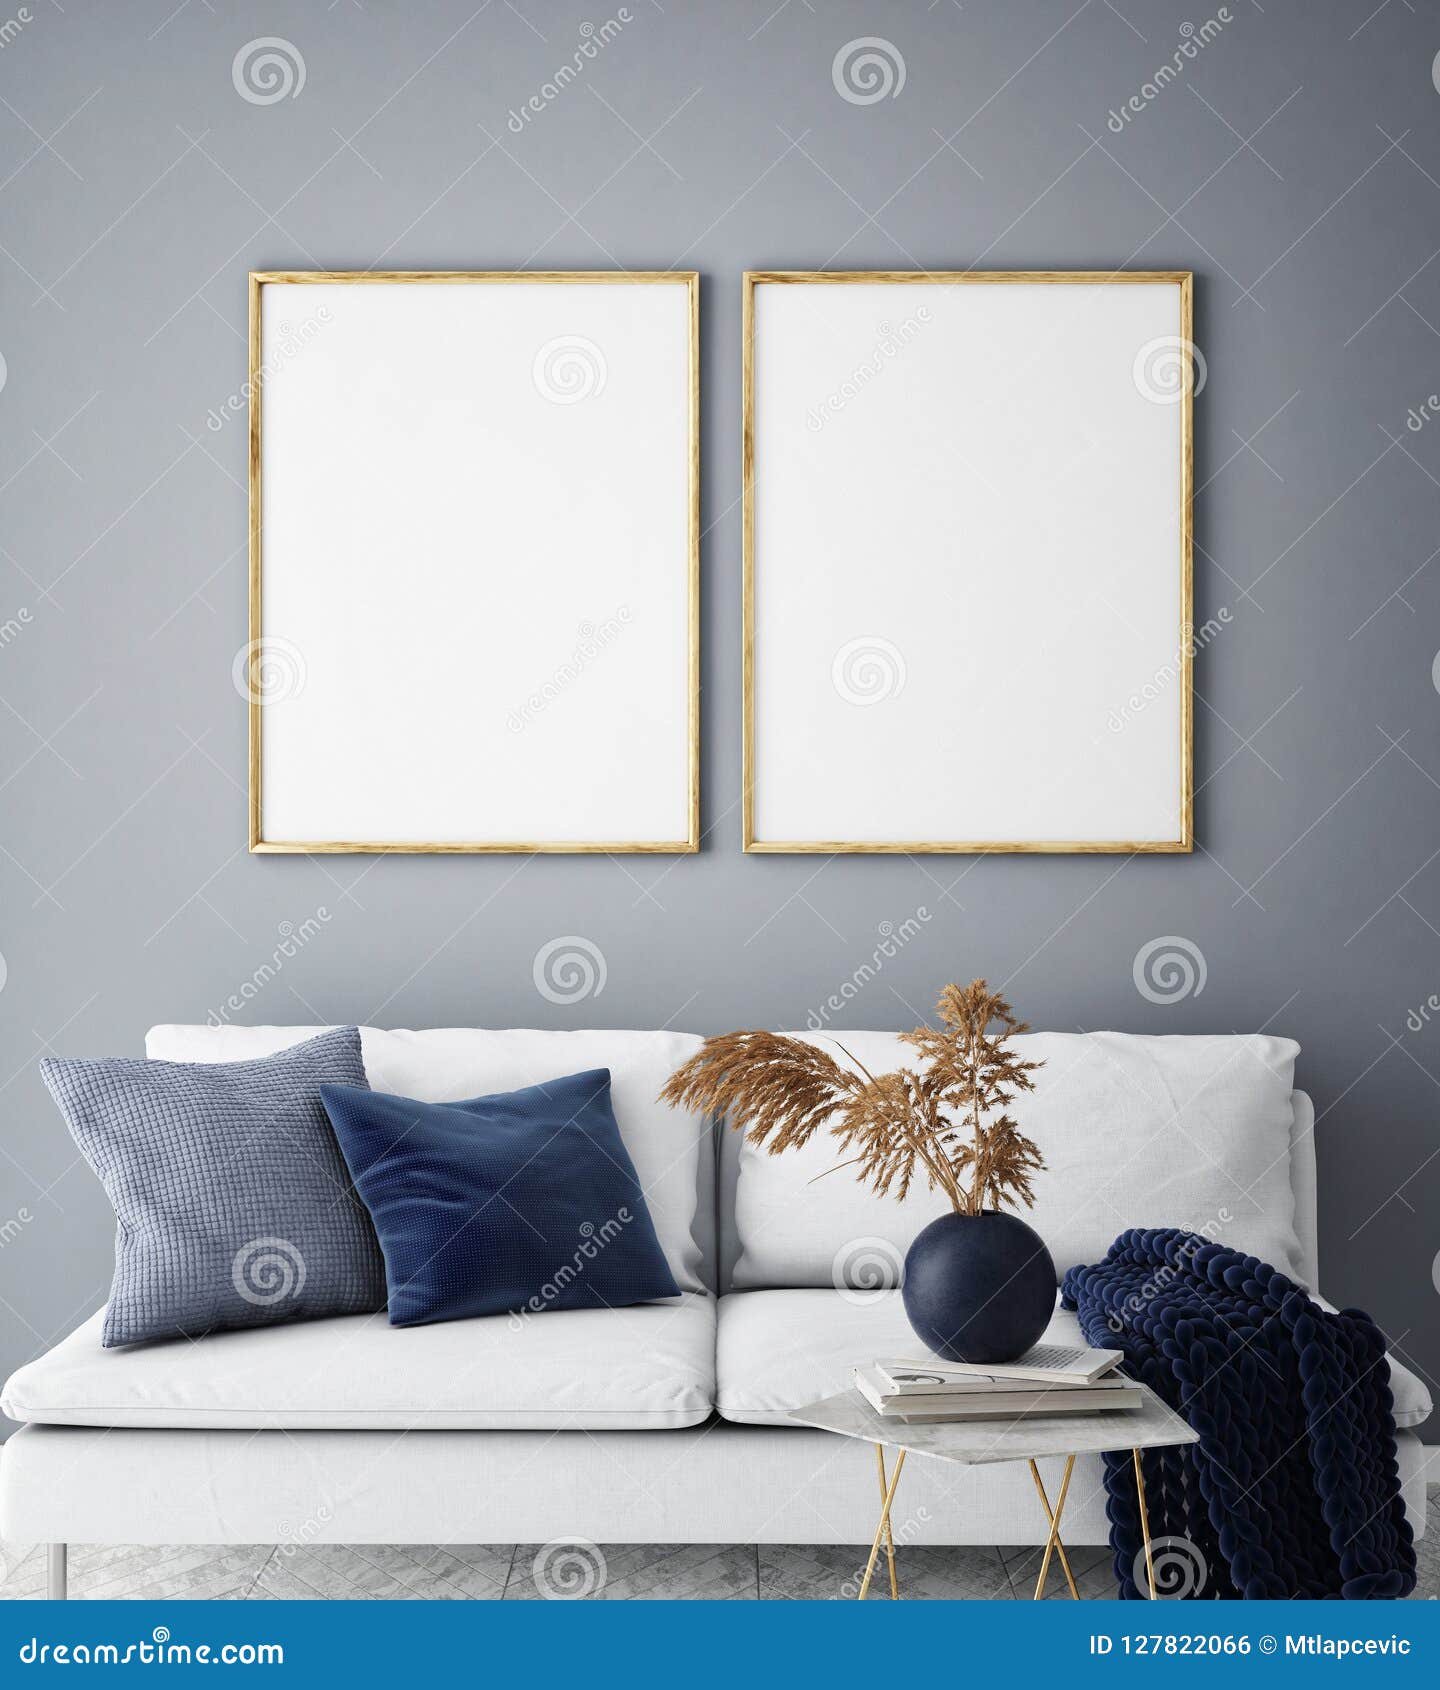 mock up poster frame in hipster interior background, living room, scandinavian style, 3d render, 3d 